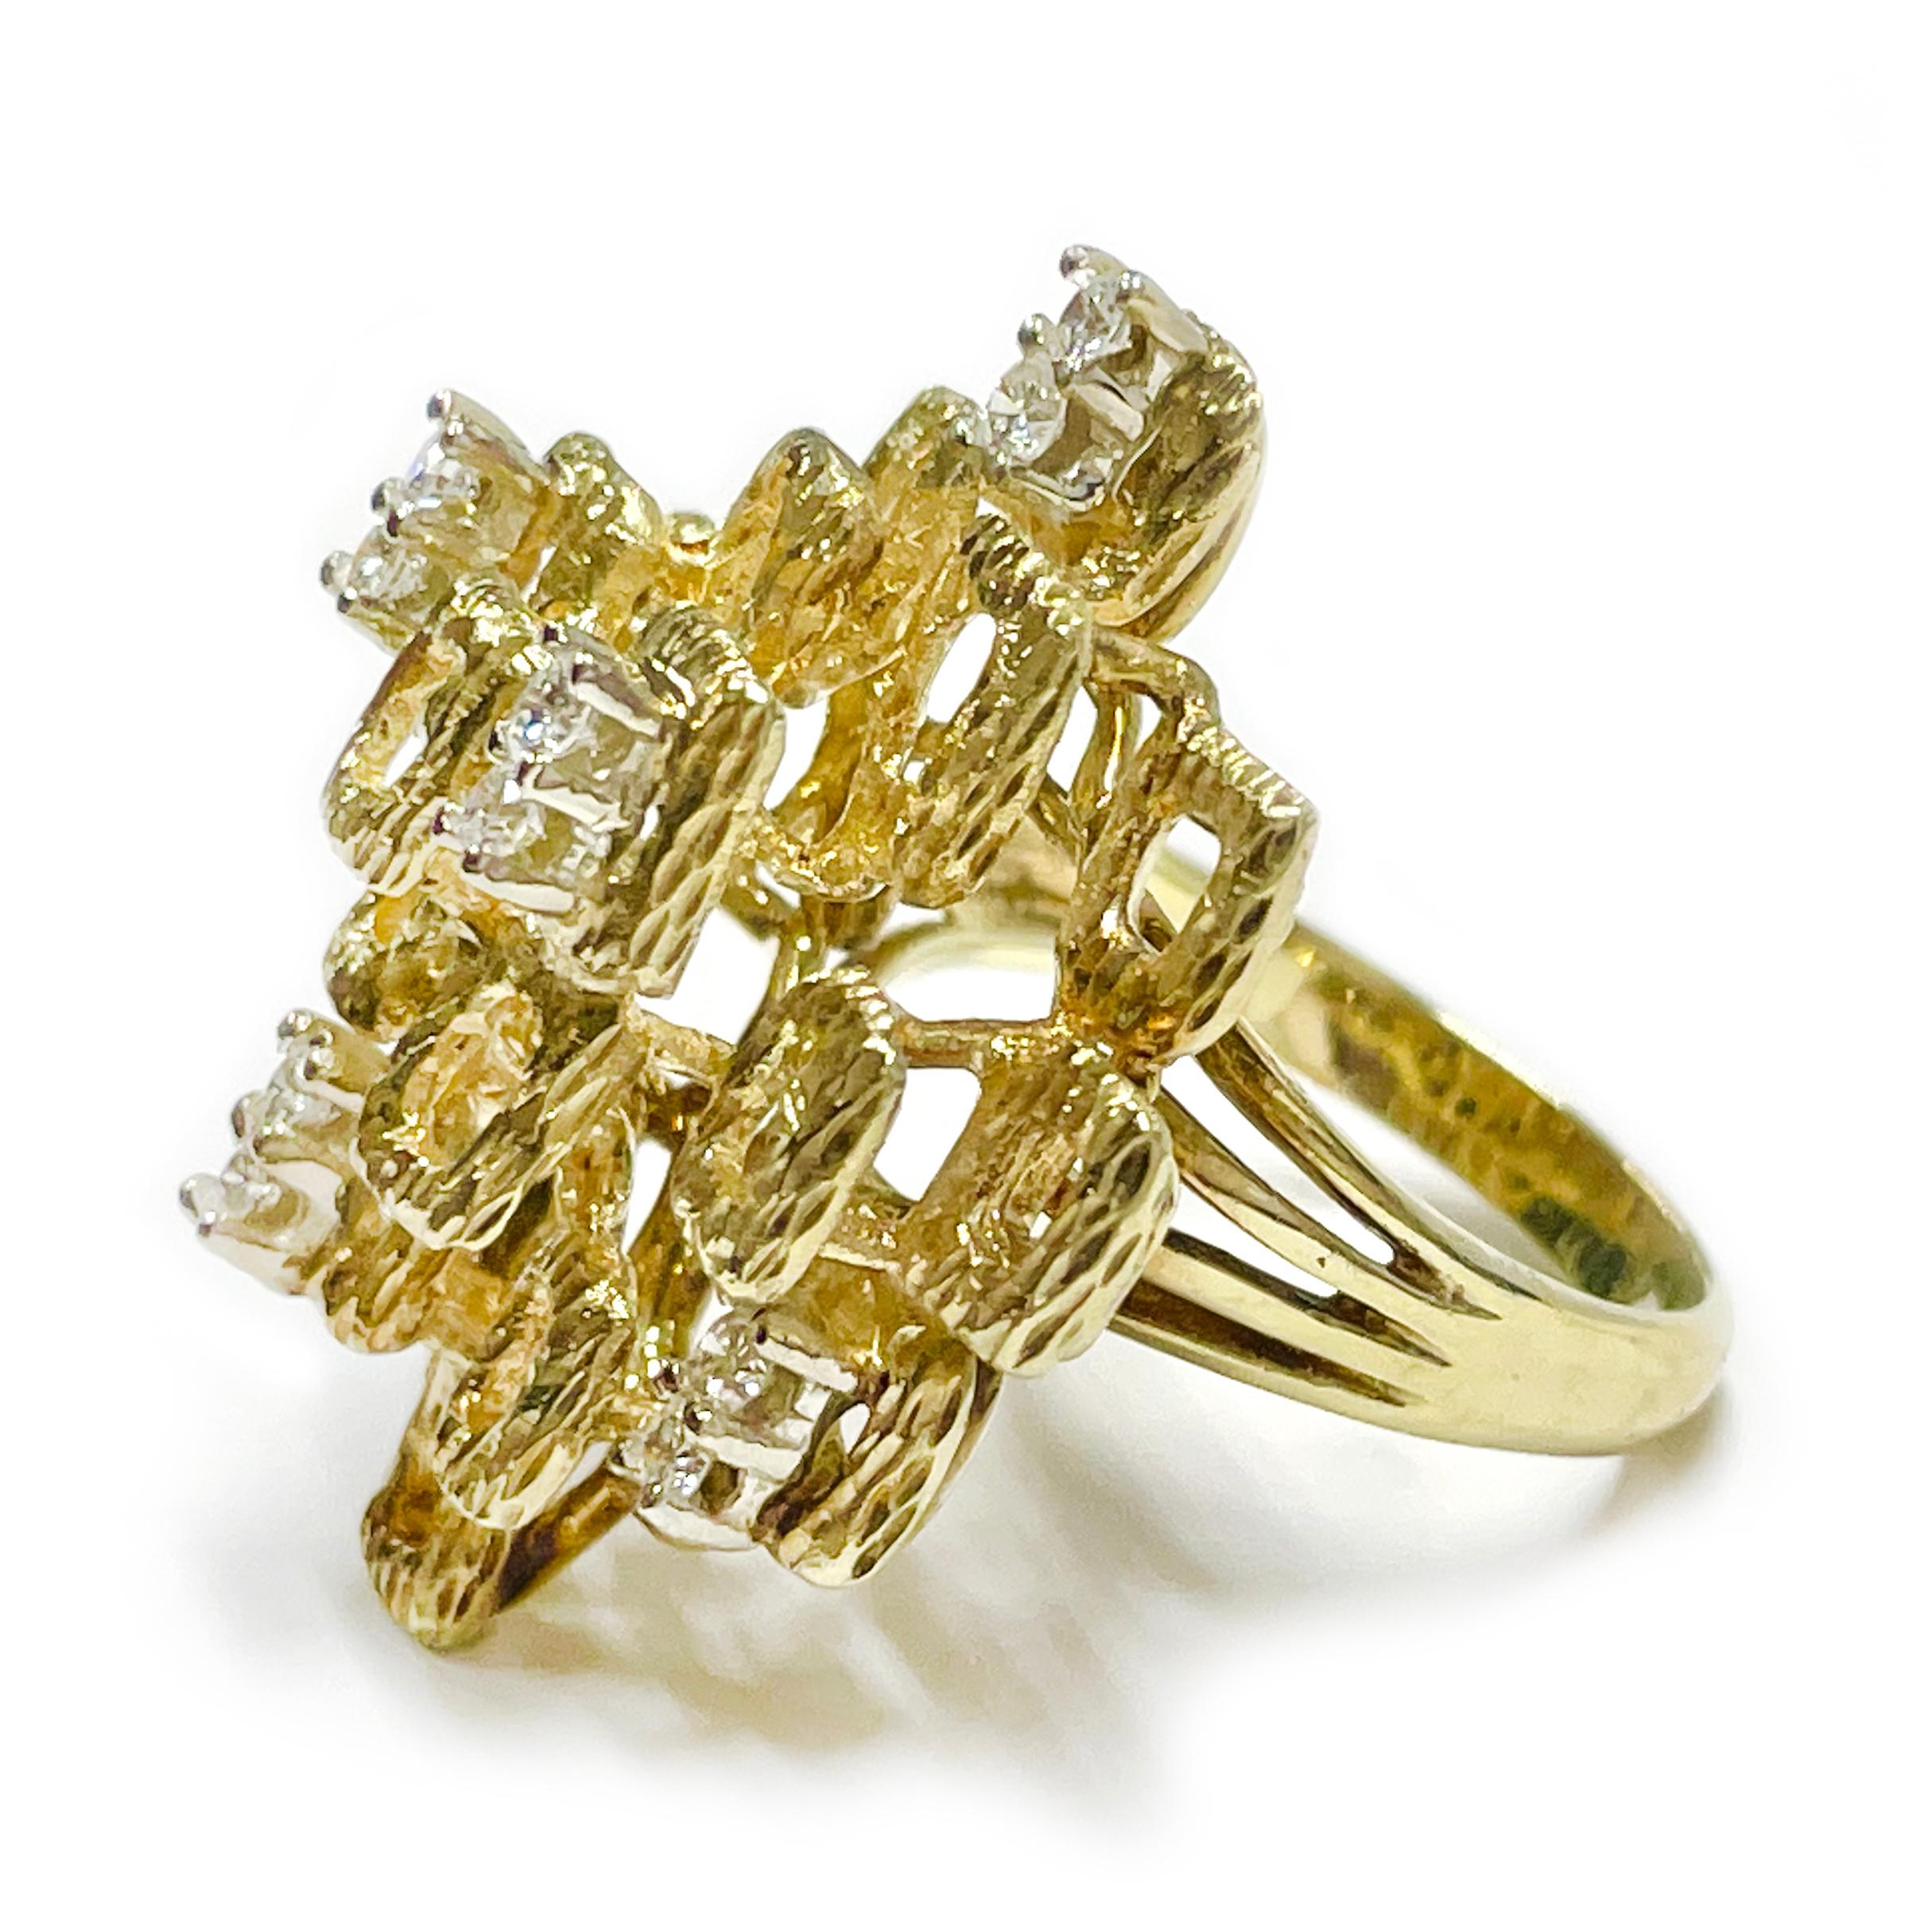 Mehrreihiger Retro-Diamantring aus 14 Karat Gelbgold, etwa in den 1980er Jahren. Das einzigartige Design besteht aus strukturierten, offenen Goldquadraten mit zehn 2 mm großen, runden, zackengefassten Diamanten mit einem Gesamtkaratgewicht von 0,30